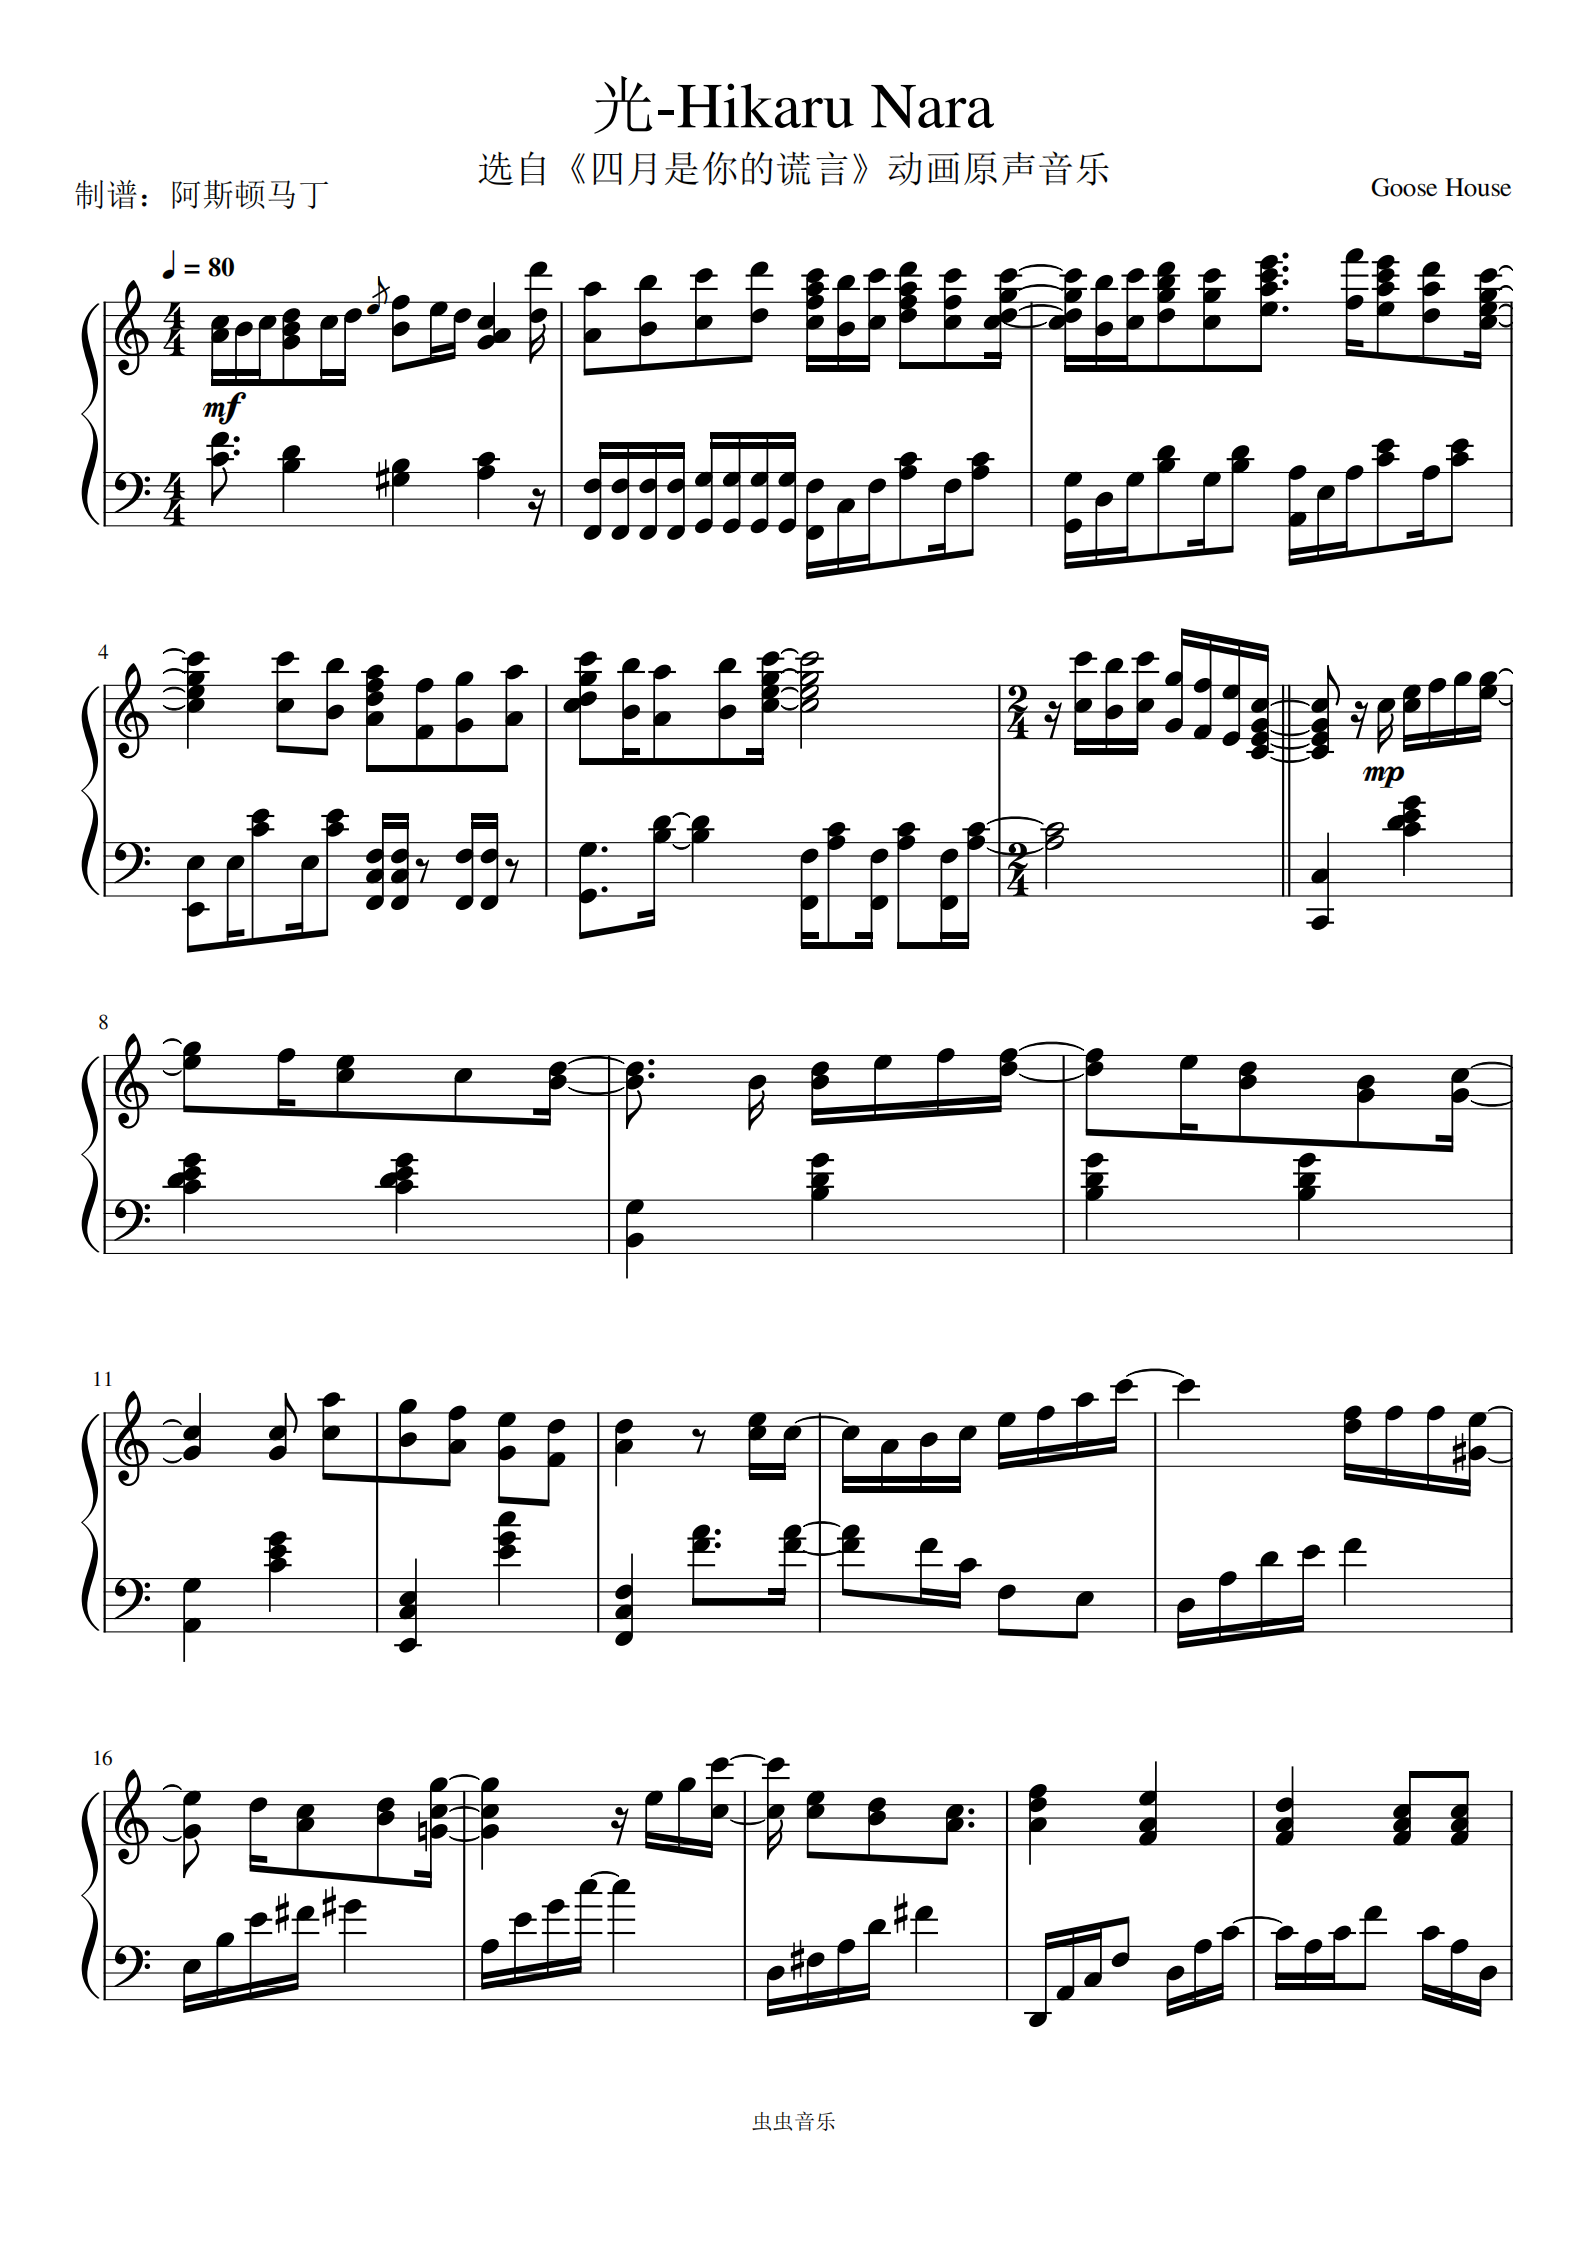 ☆ Goose House-Shigatsu Wa Kimi No Uso - Hikaru Nara Violin Score pdf,  -四月は君の嘘 - 光るなら 楽譜 - Free Score Download ☆